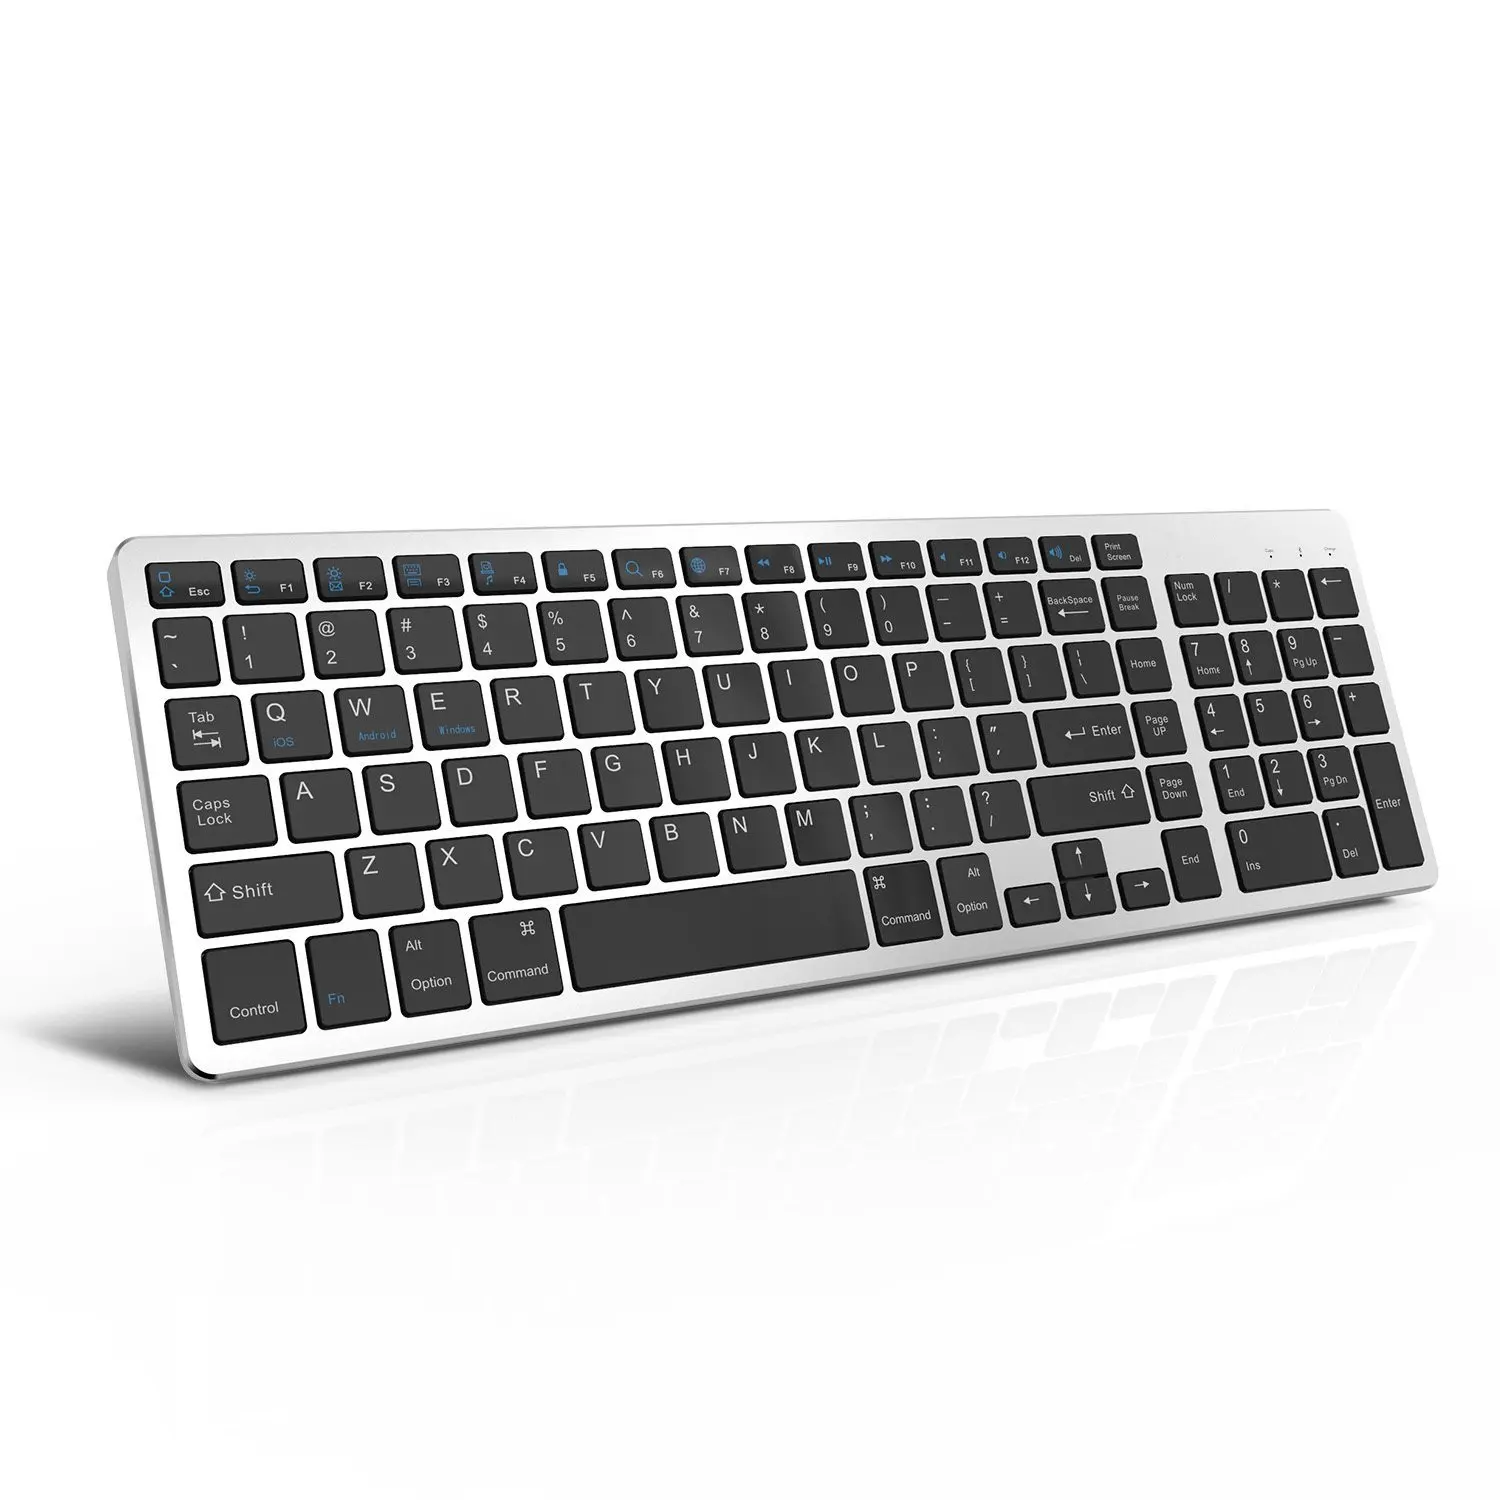 Seenda-clavier sans fil bkc001, fin, de haute qualité avec une touche numérique, pour Mac et apple, pc portable, tablette, téléphones, meilleure qualité